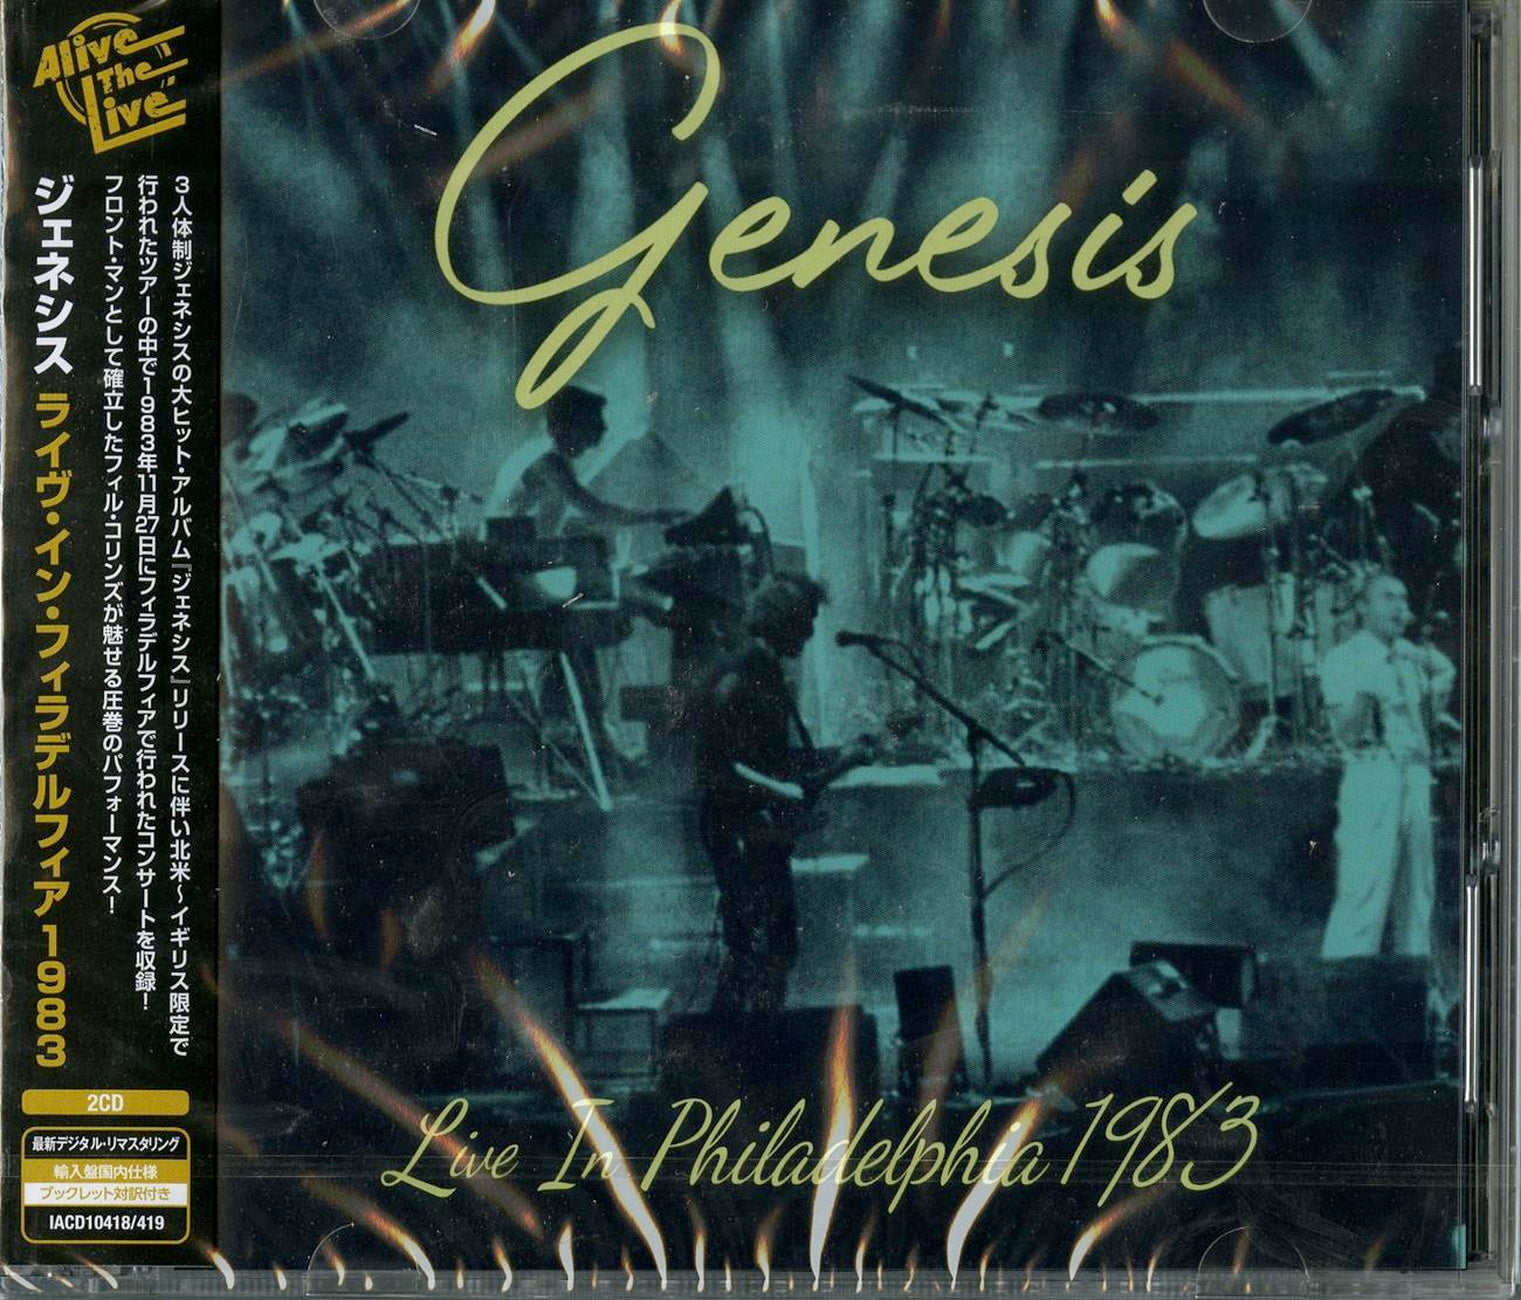 faglært Teenageår Gravere Genesis - Live In Philadelphia 1983 - Import 2 CD Bonus Track - CDs Vinyl  Japan Store